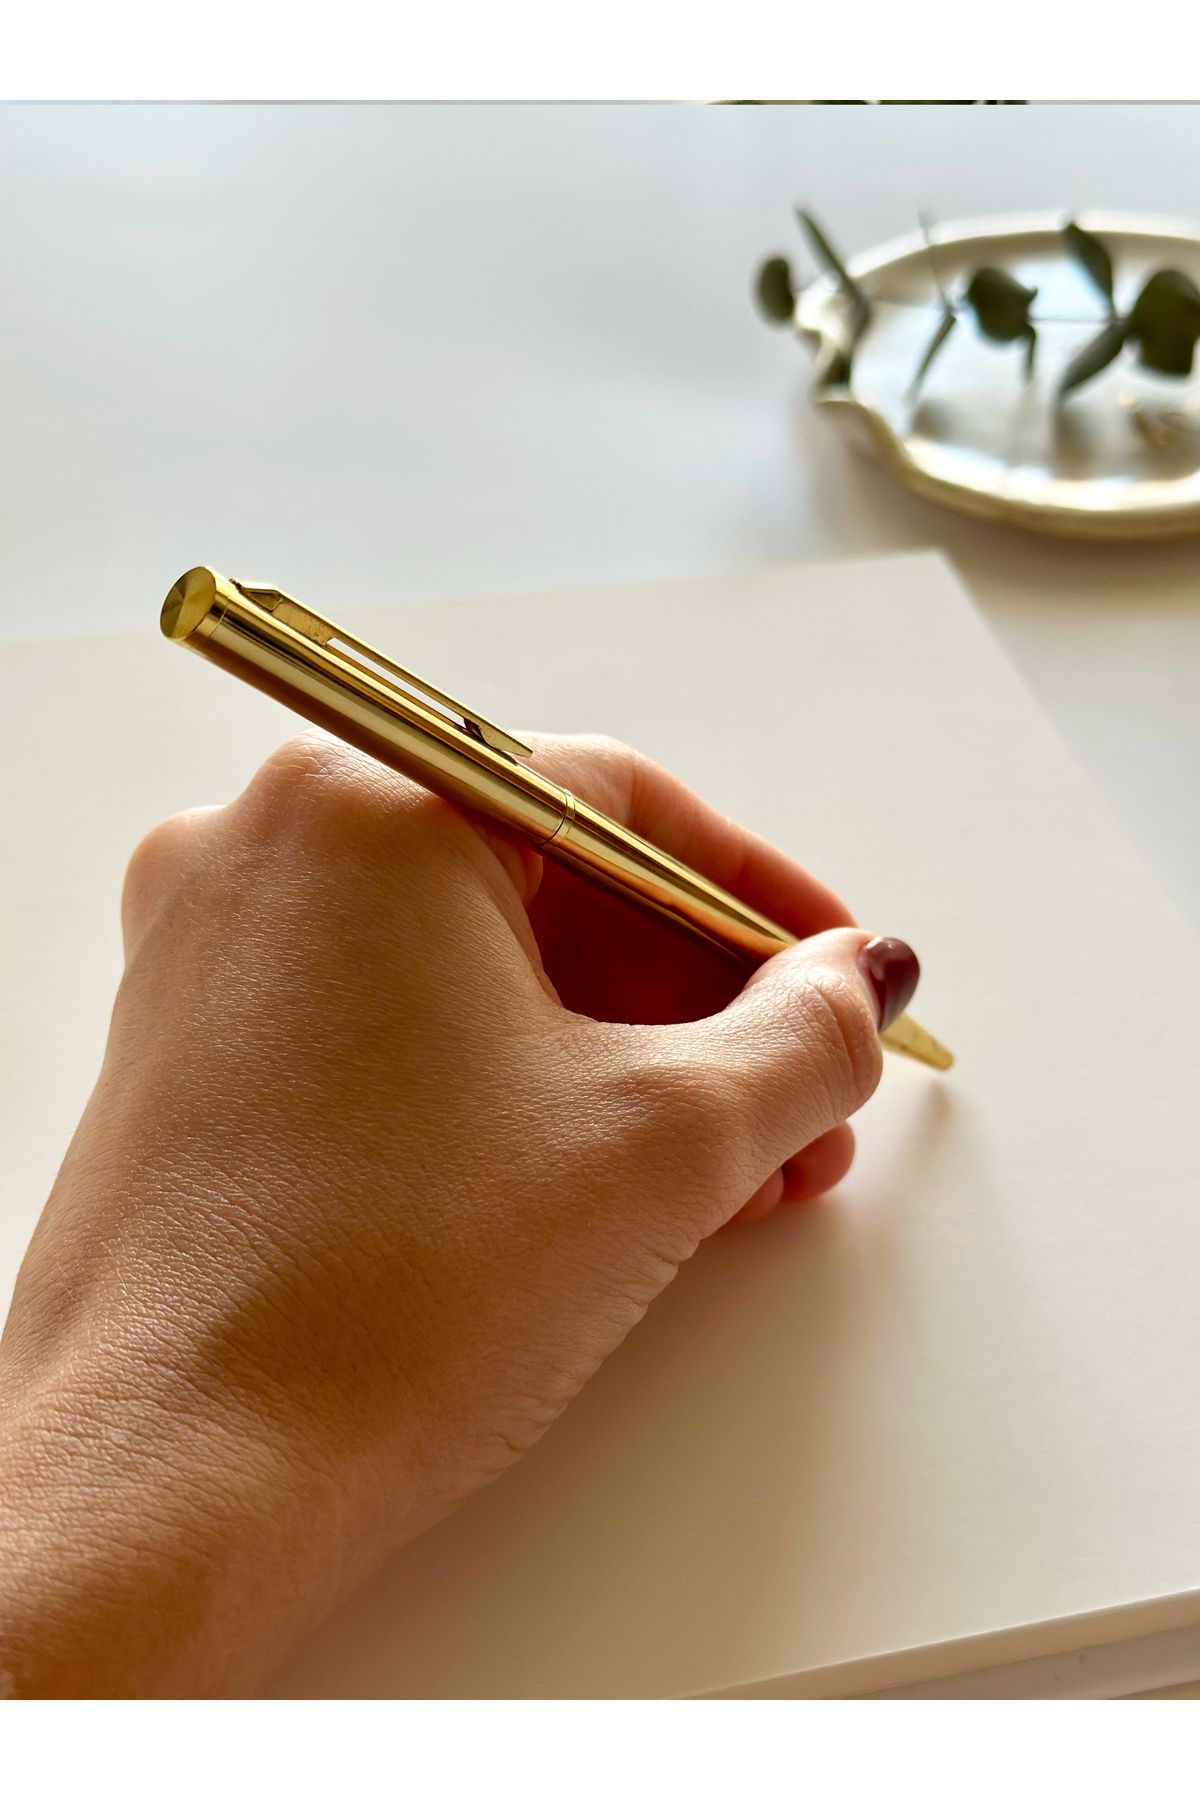 Norm Design Kalem, Düğün ve Nikah Kalemi, Metal Gold Tükenmez Kalem